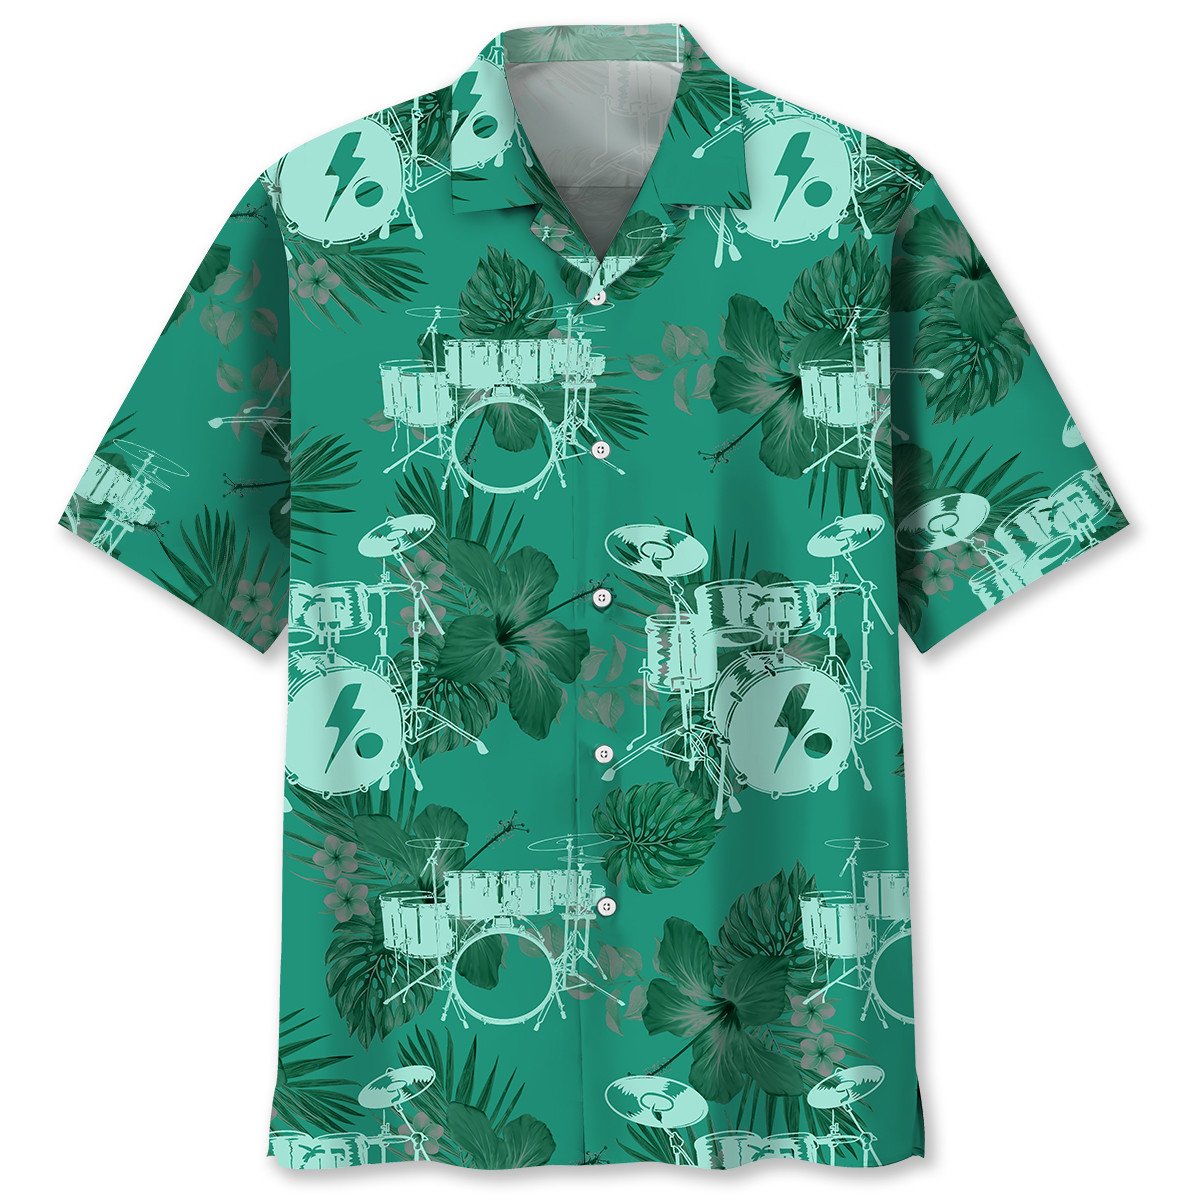 NEW Drum Kelly Green Hawaiian Shirt